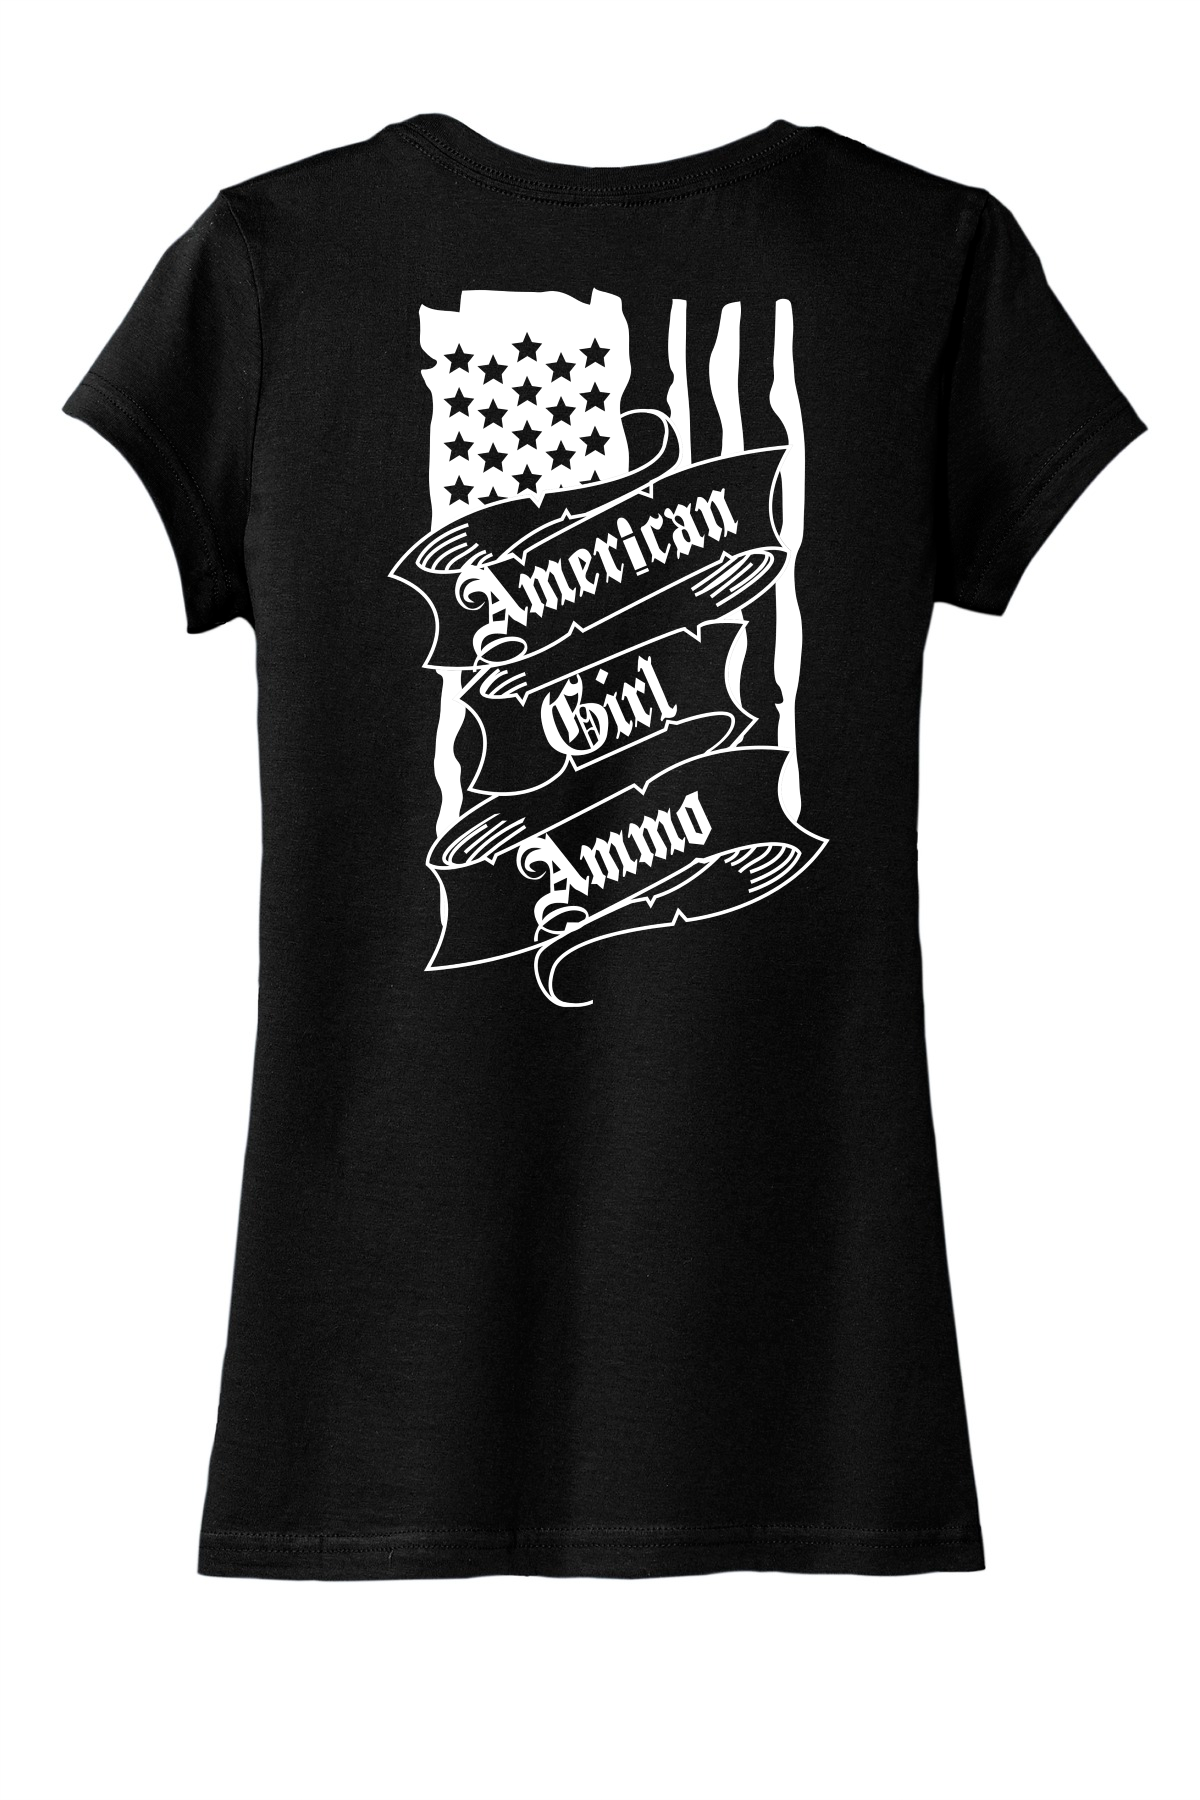 Flag- Women's T-Shirt